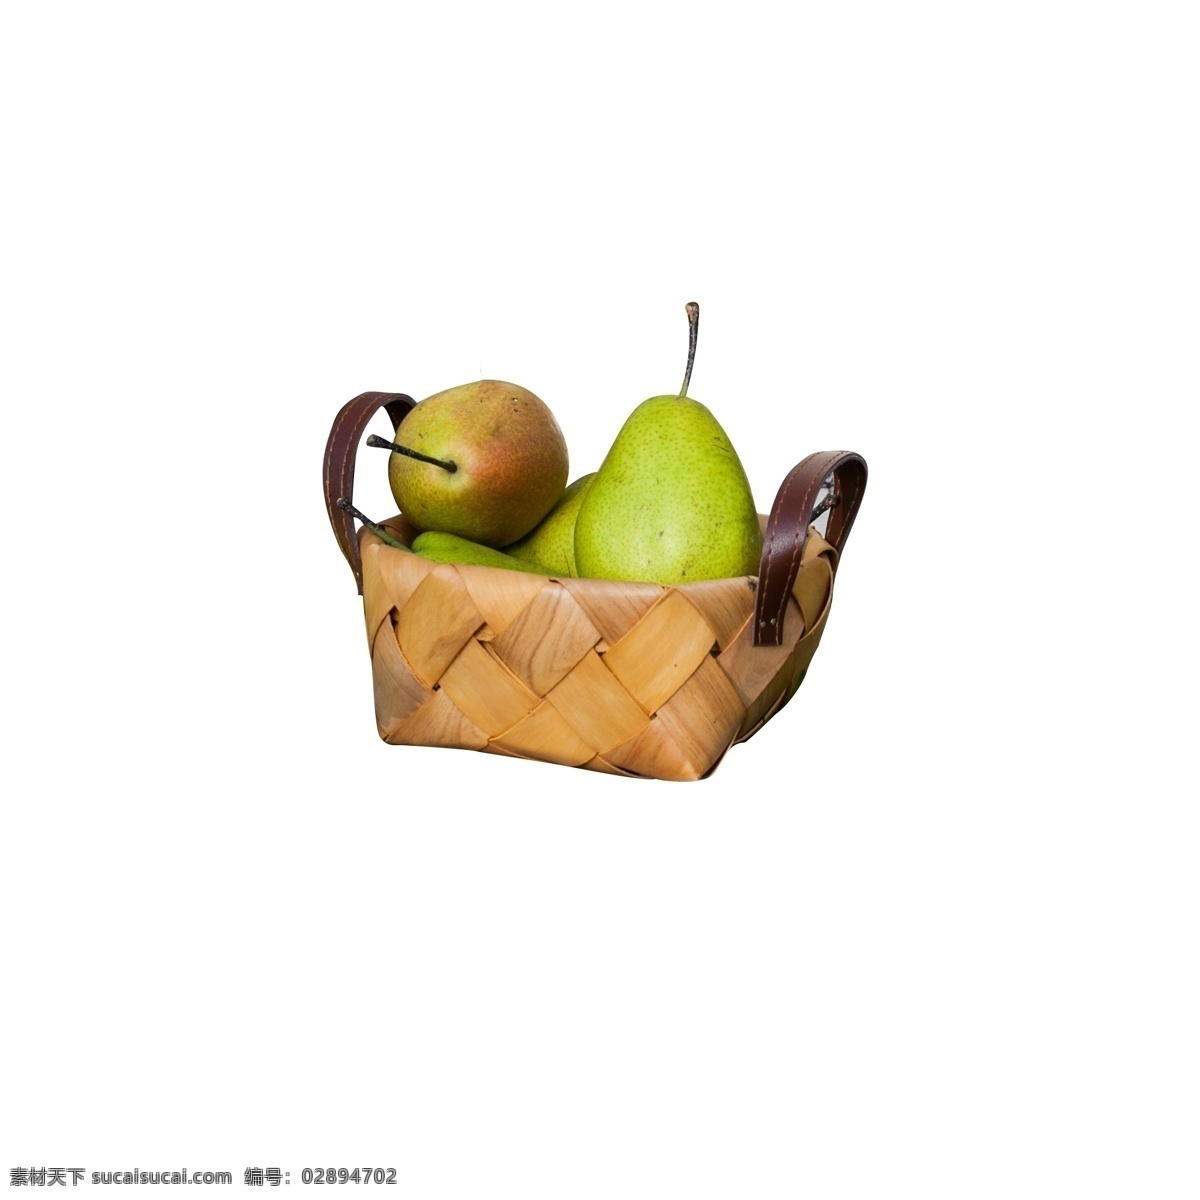 灰色 立体 水果 盒子 元素 创意 包装 装饰 梨子 食物 纹理 真实 美食 味道 篮子 编织 果实